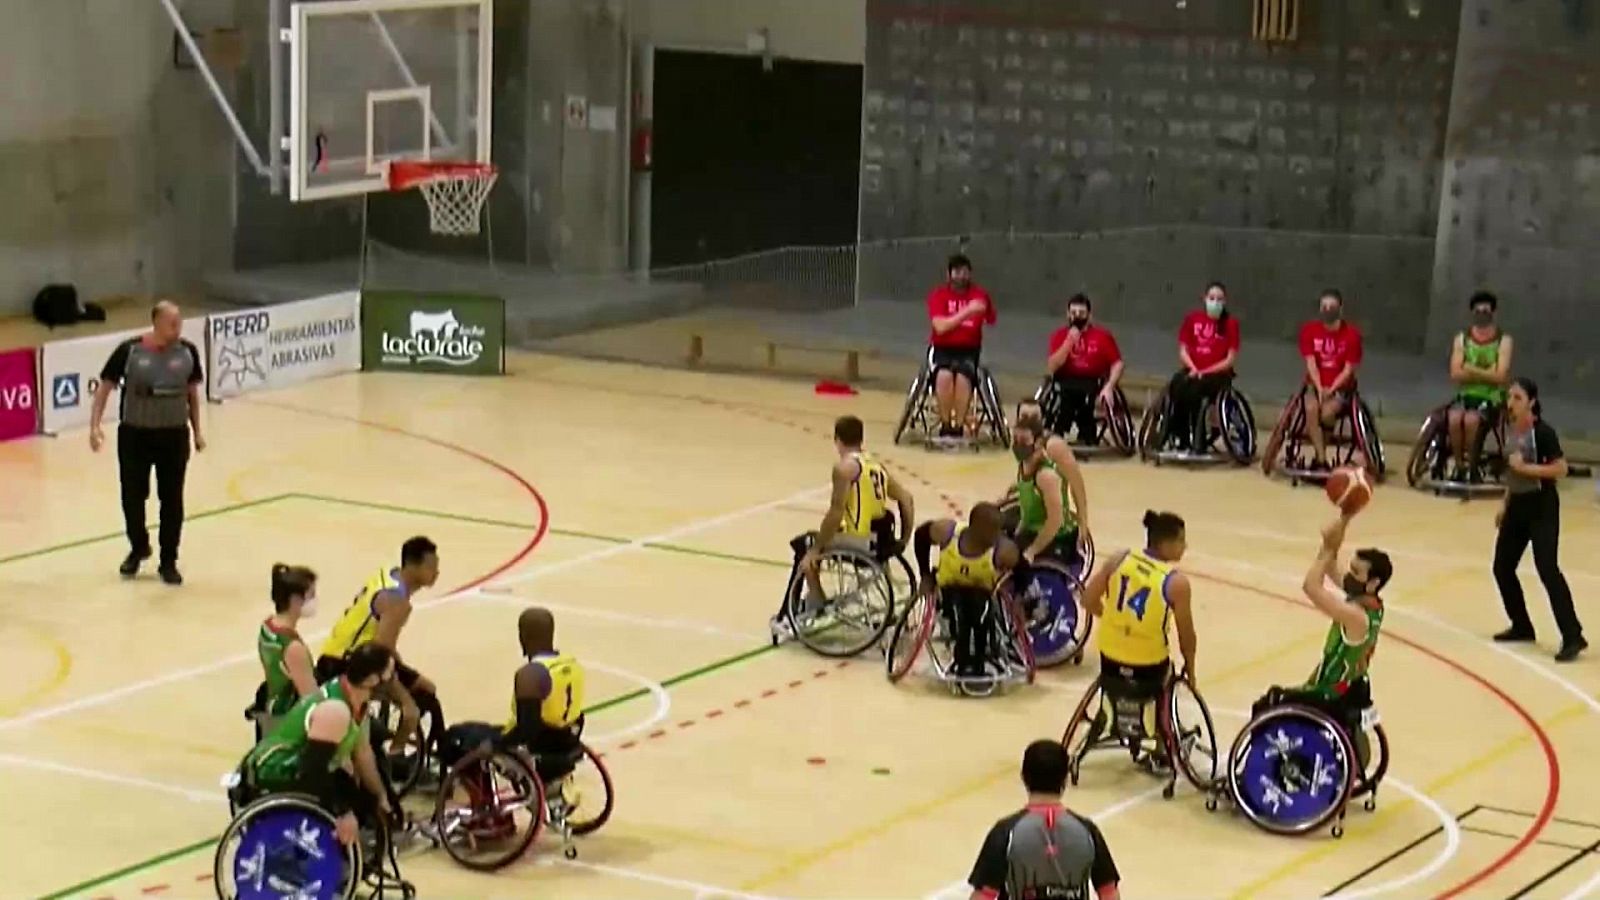 Baloncesto en silla de ruedas - Liga BSR División de Honor. Resumen Jornada 4 - RTVE.es